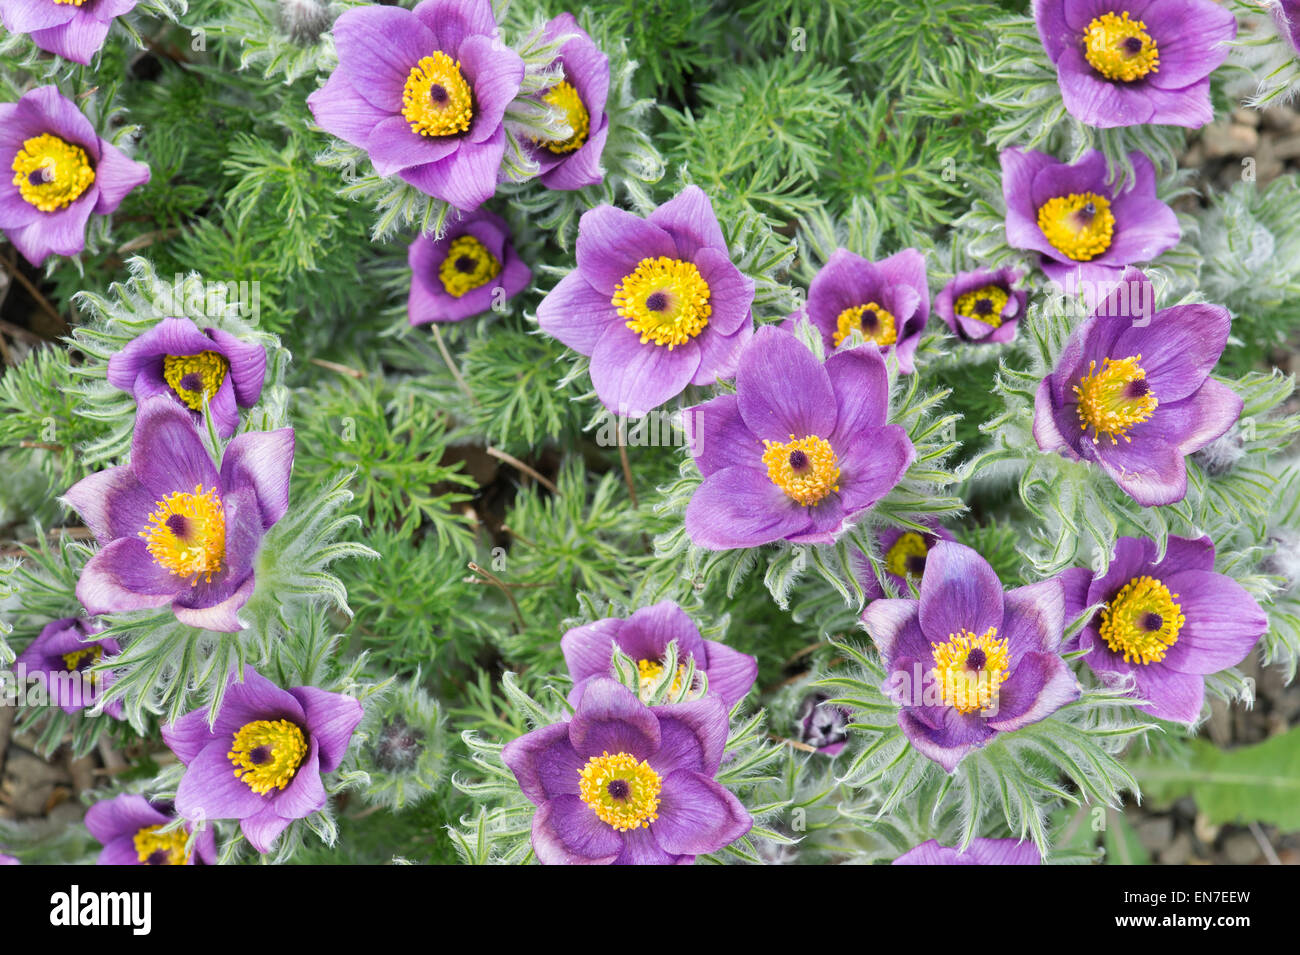 Pulsatilla Vulgaris Grandis. Pasque flower Stock Photo